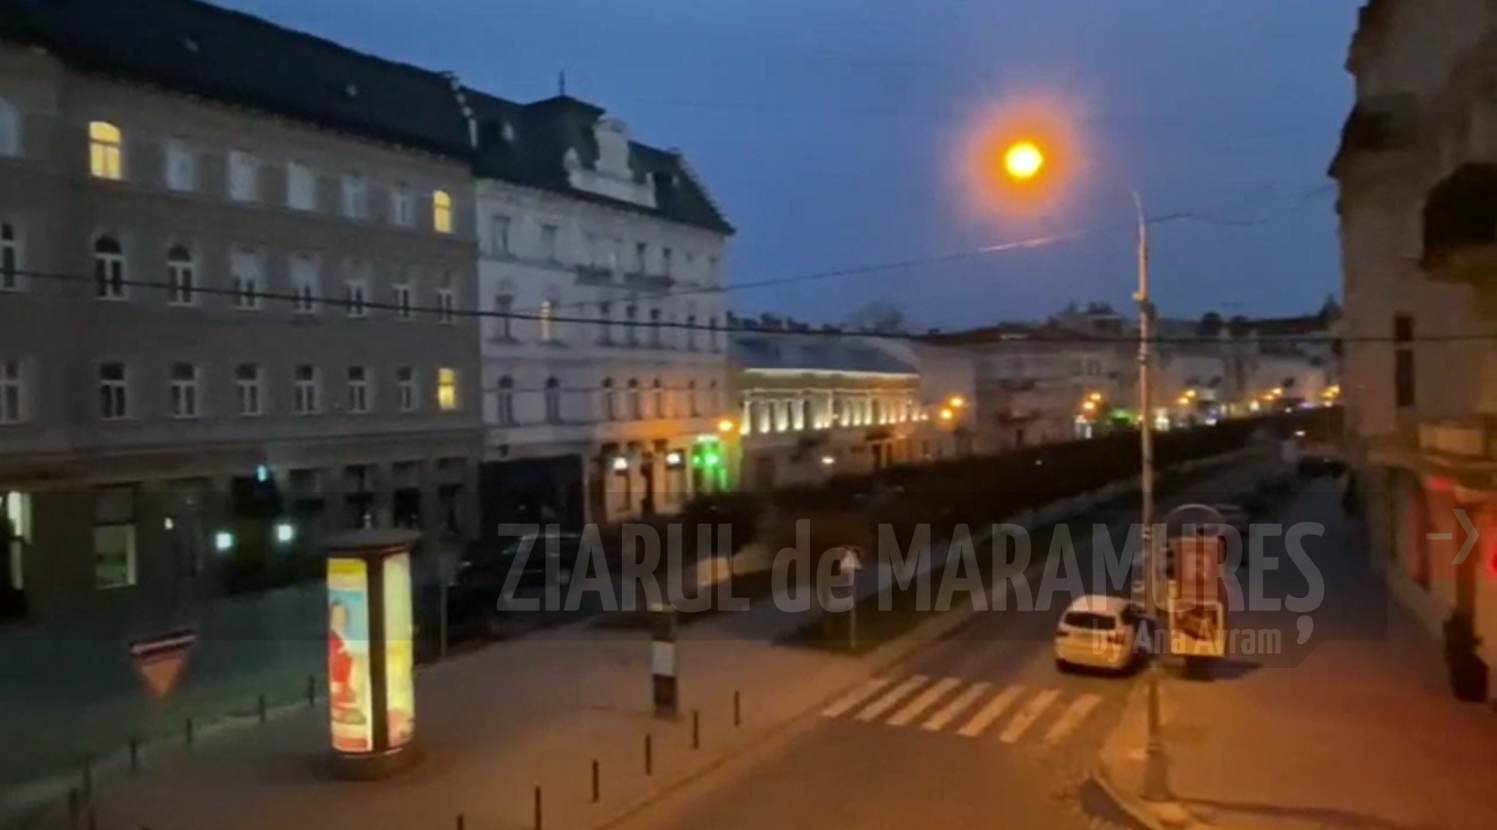 Sirenele au răsunat în această dimineață în Lviv, vestul Ucrainei